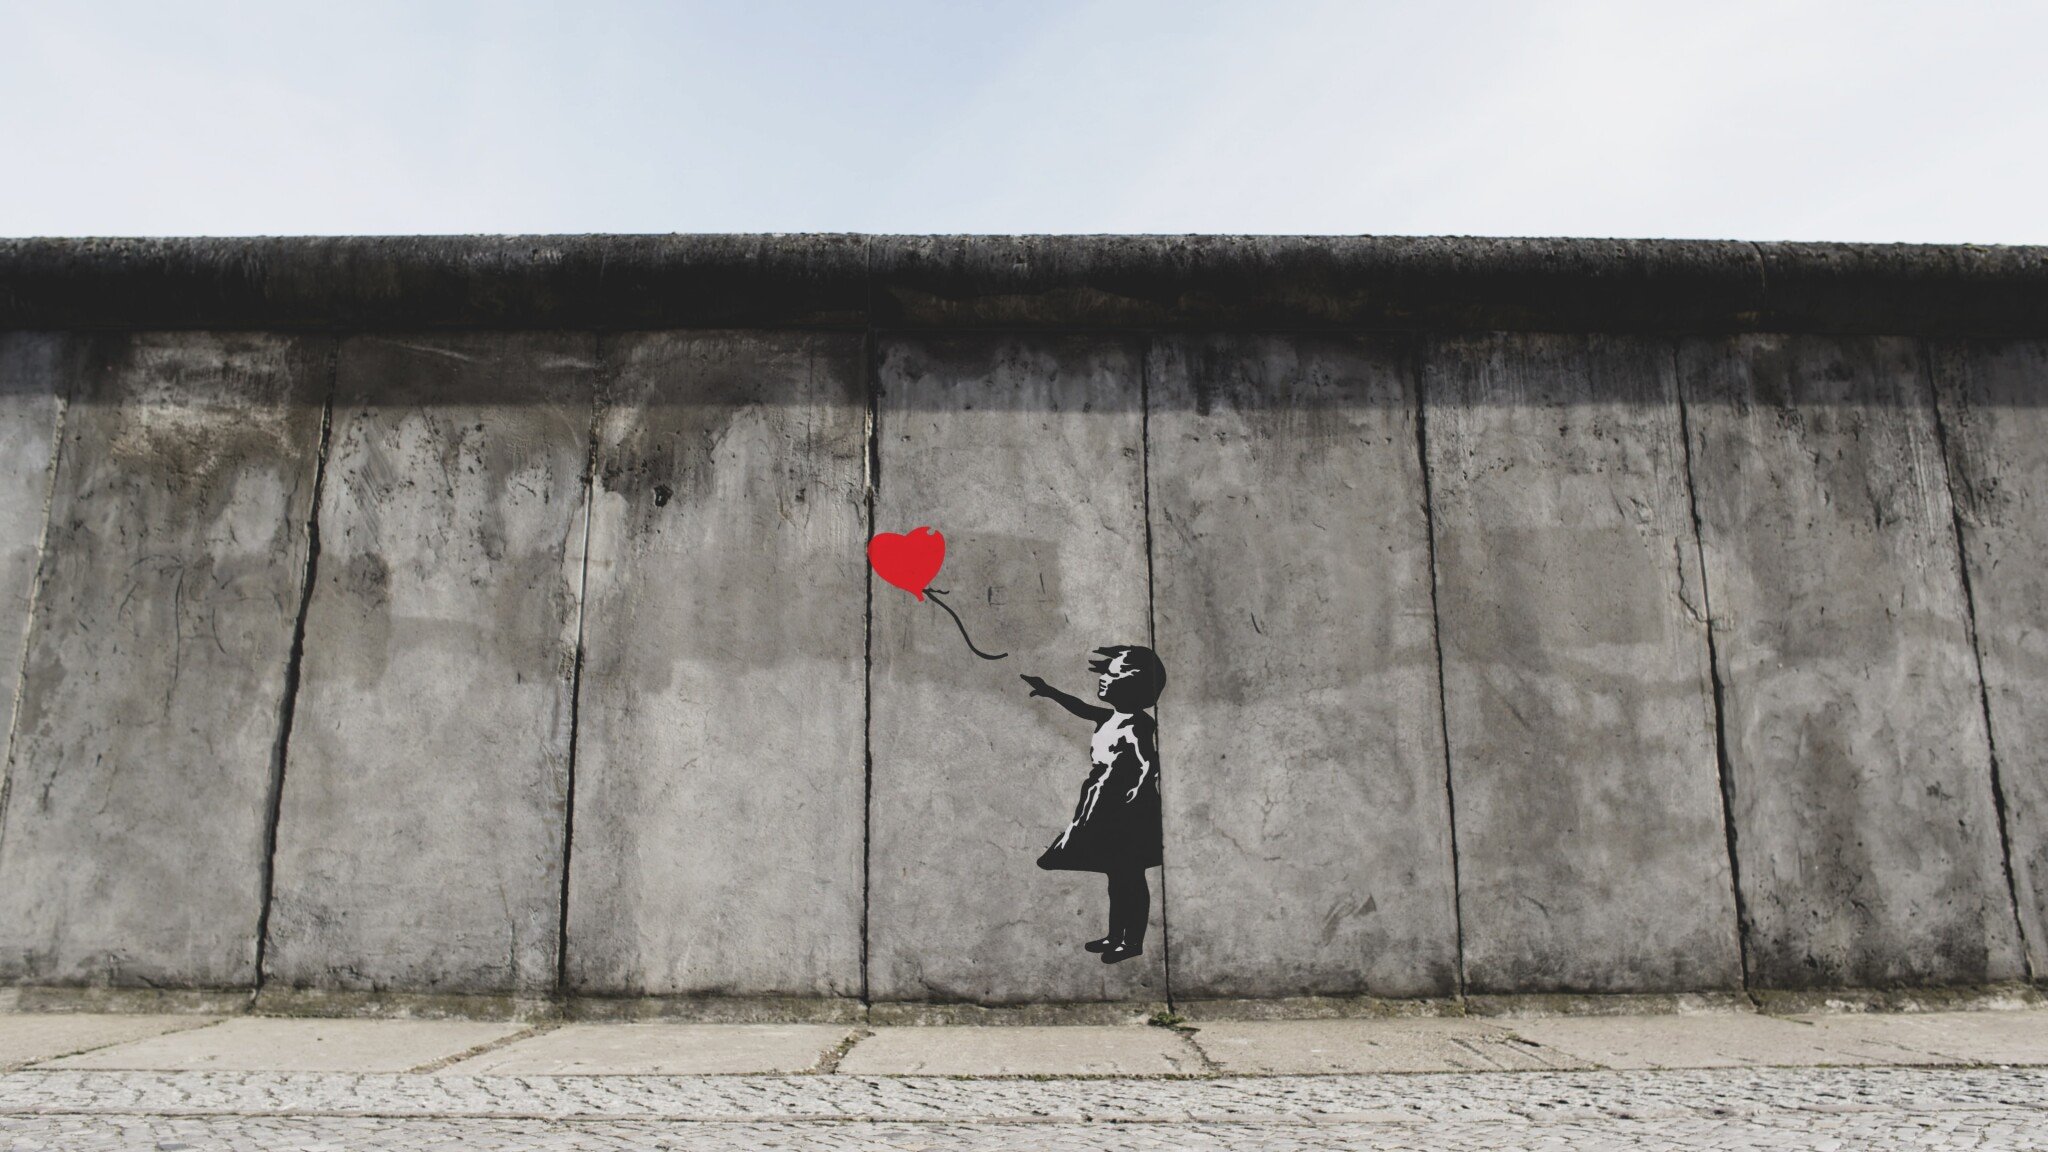 Banksy otevřel obchod v Londýně. Svůj street art prodává za 10 liber